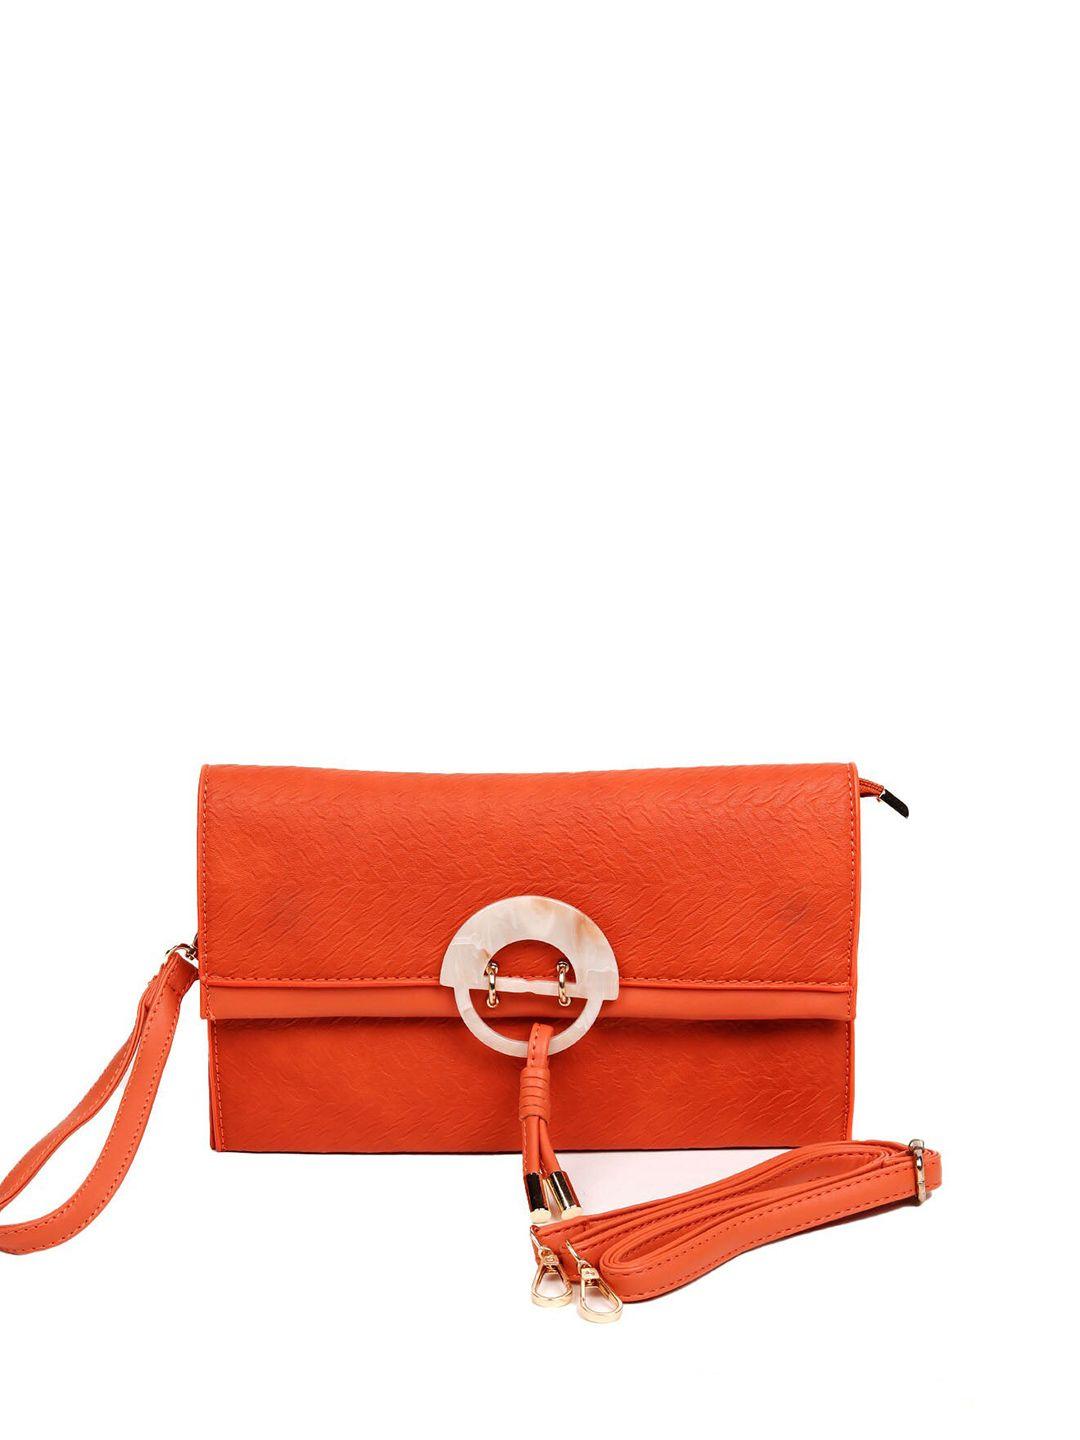 odette orange textured purse clutch